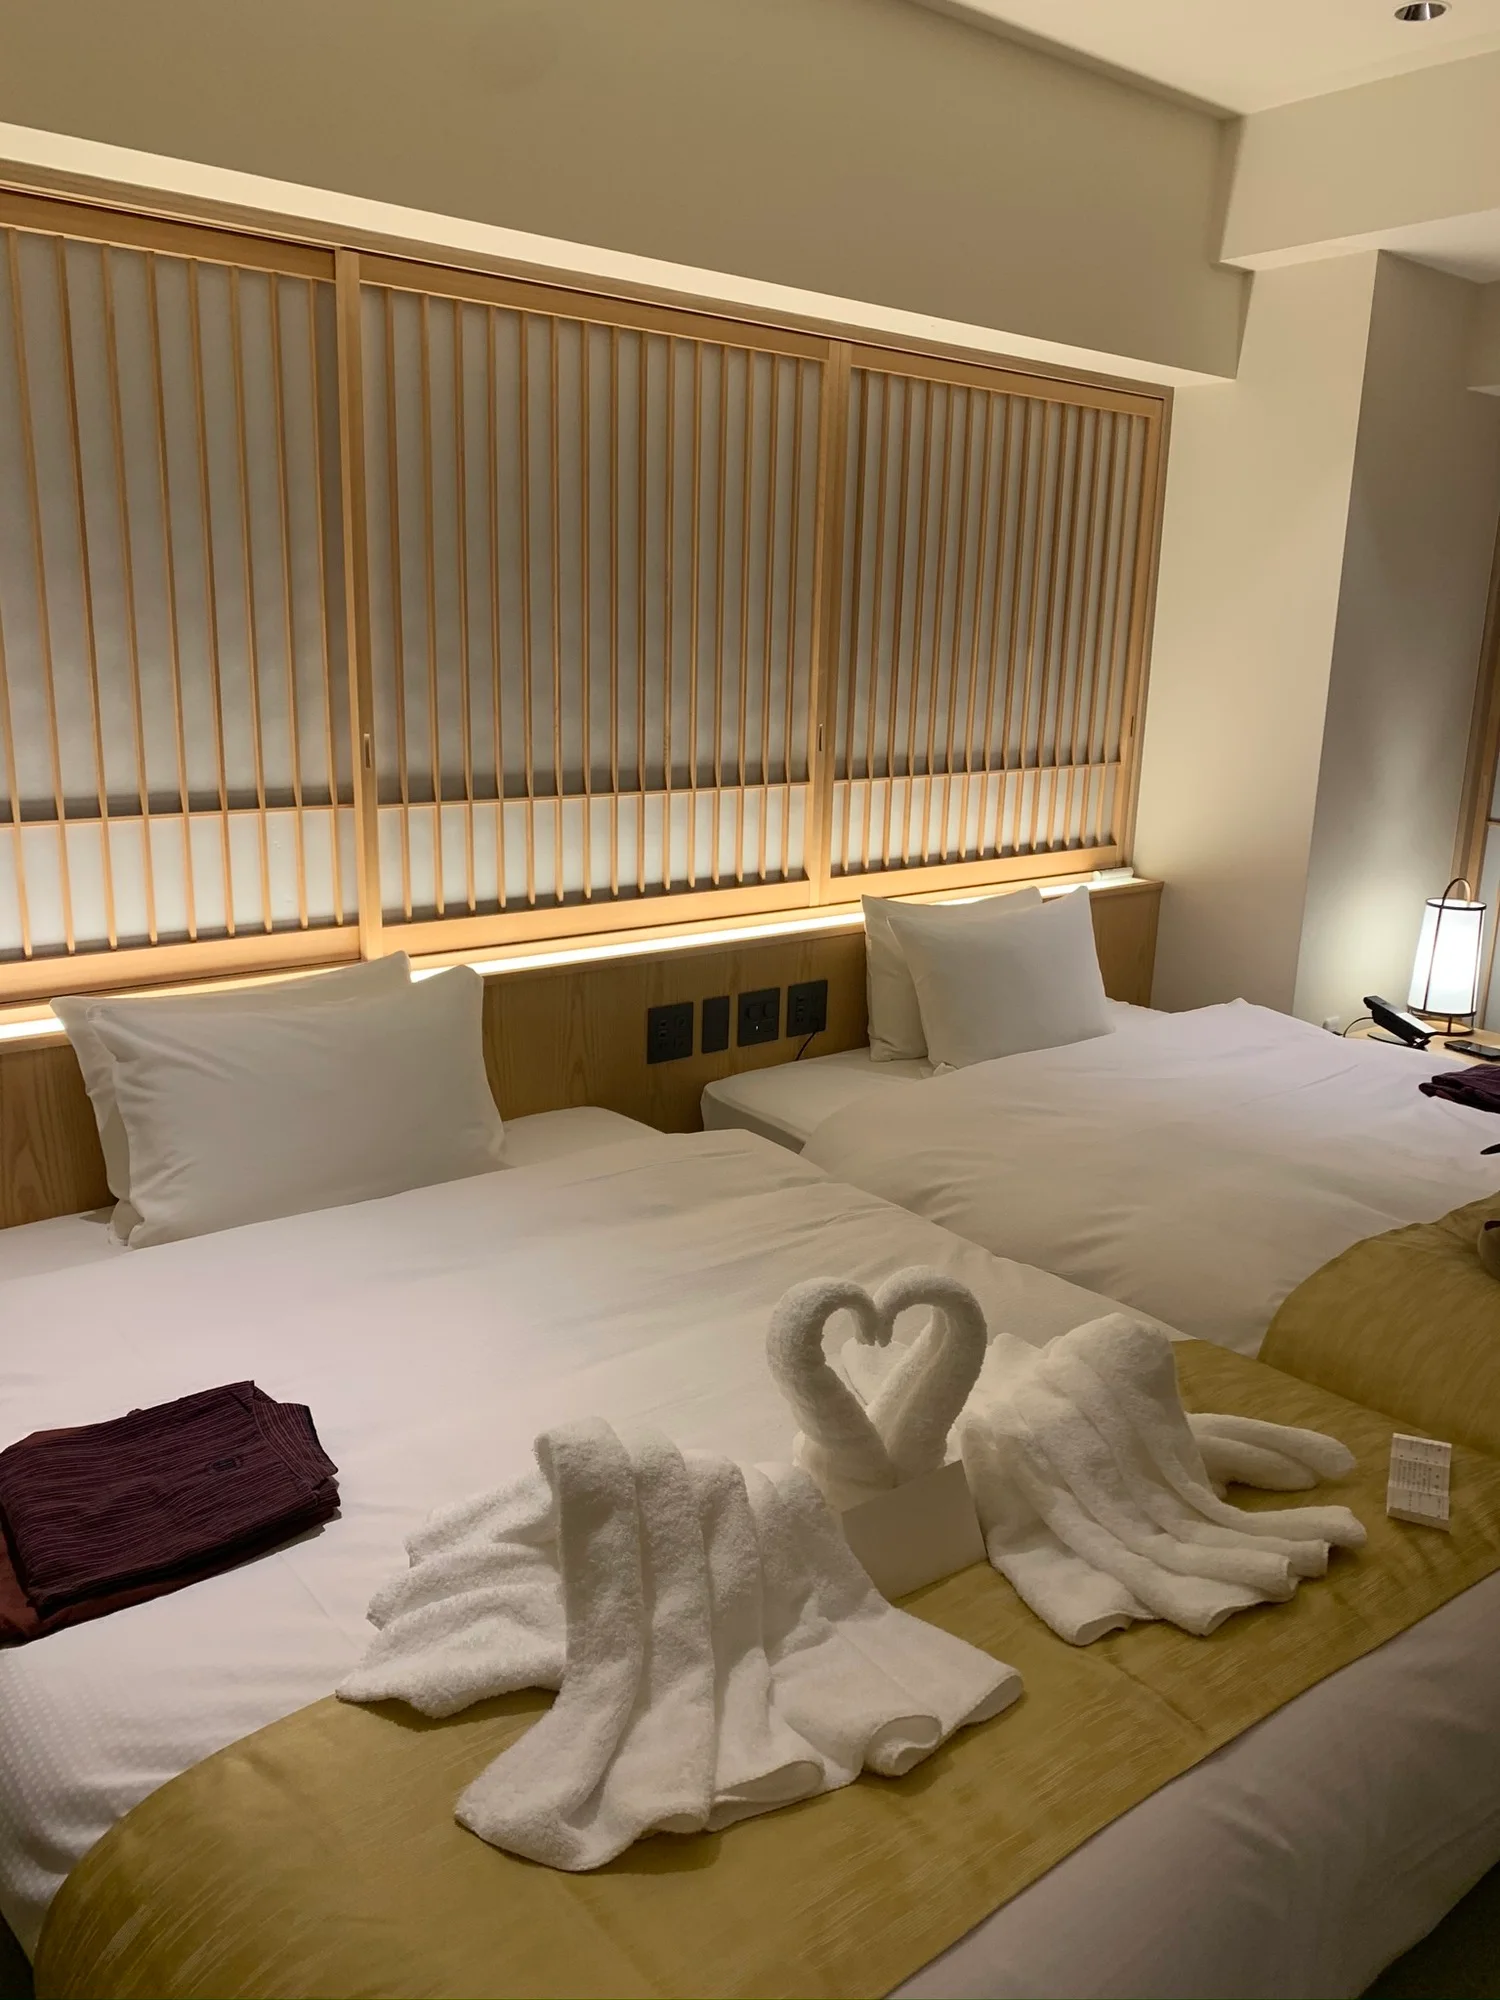 東京で温泉旅気分 カップルにおすすめ 露天風呂付き客室 のあるホテル14選 Icotto イコット